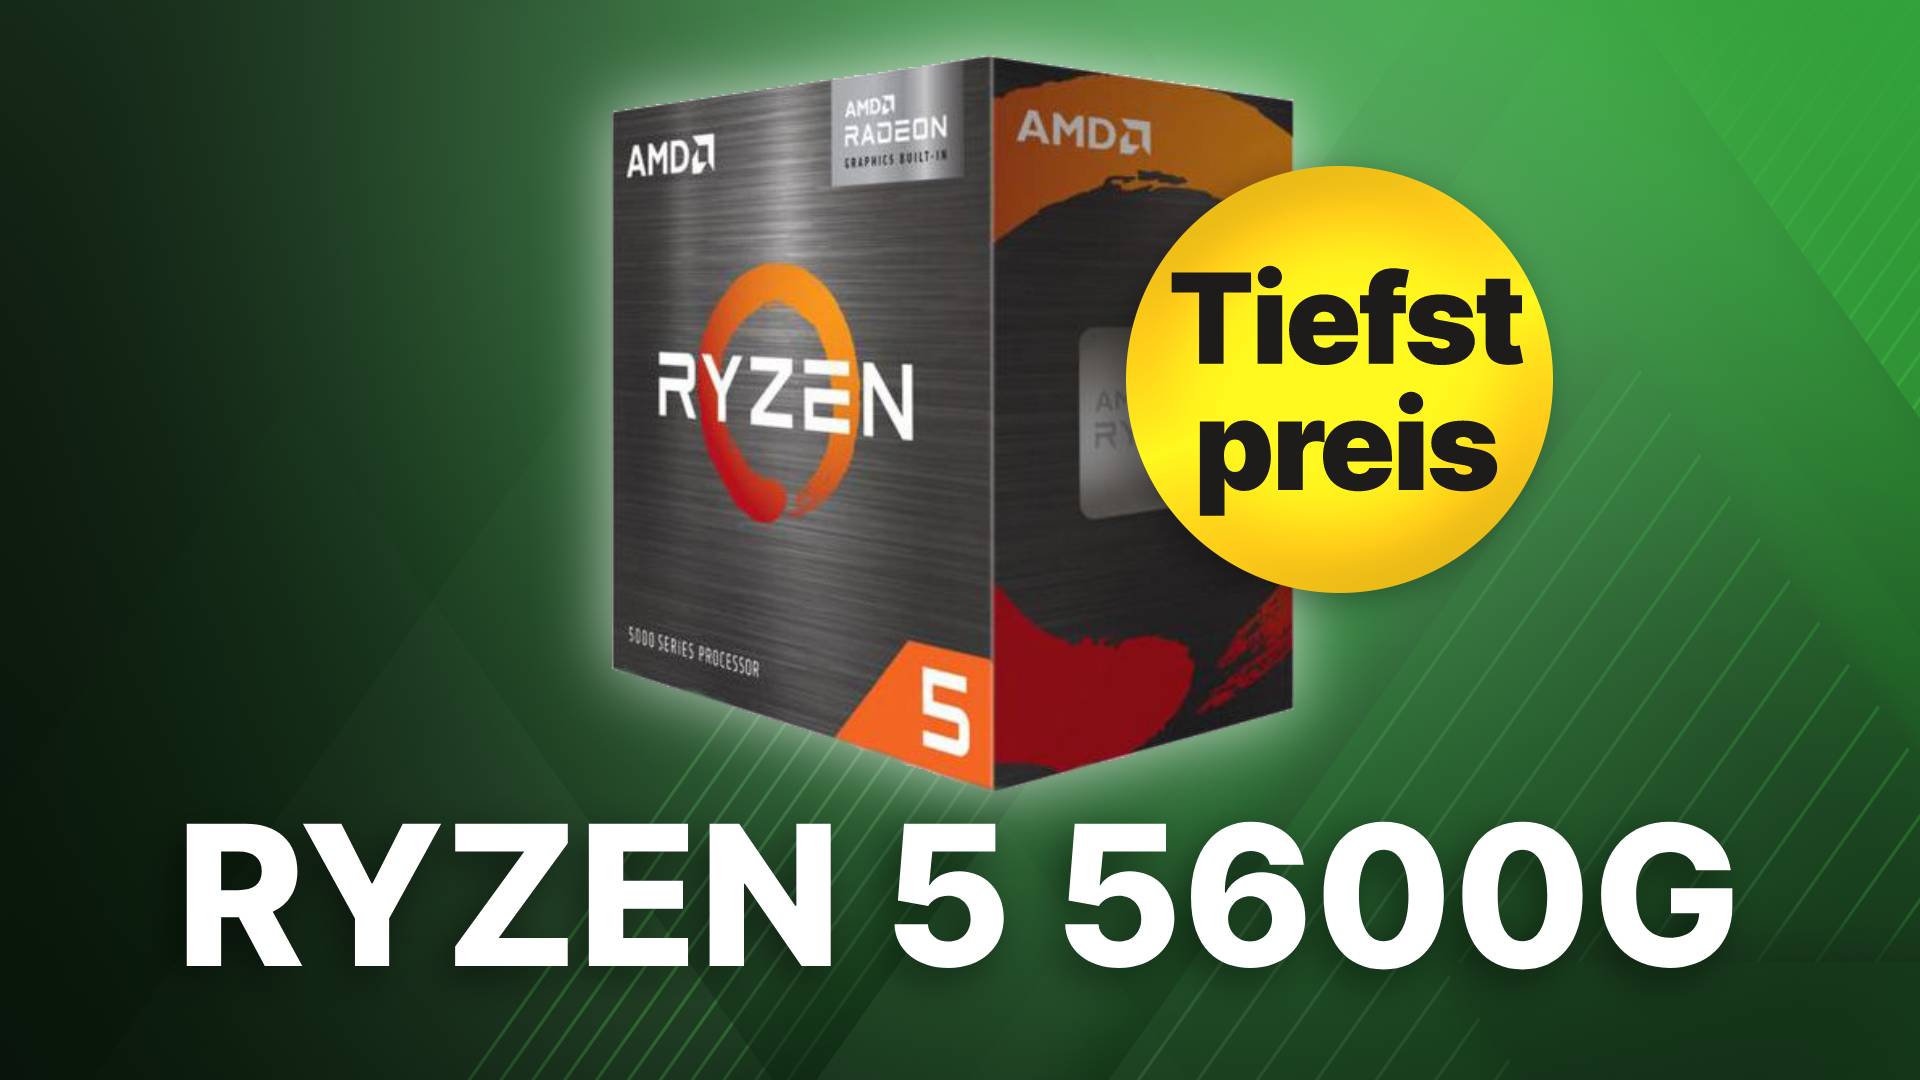 noch für 5600G: Gamer Gutschein günstiger Ryzen ist jetzt 5 Spar-Tipp dank AMD DER